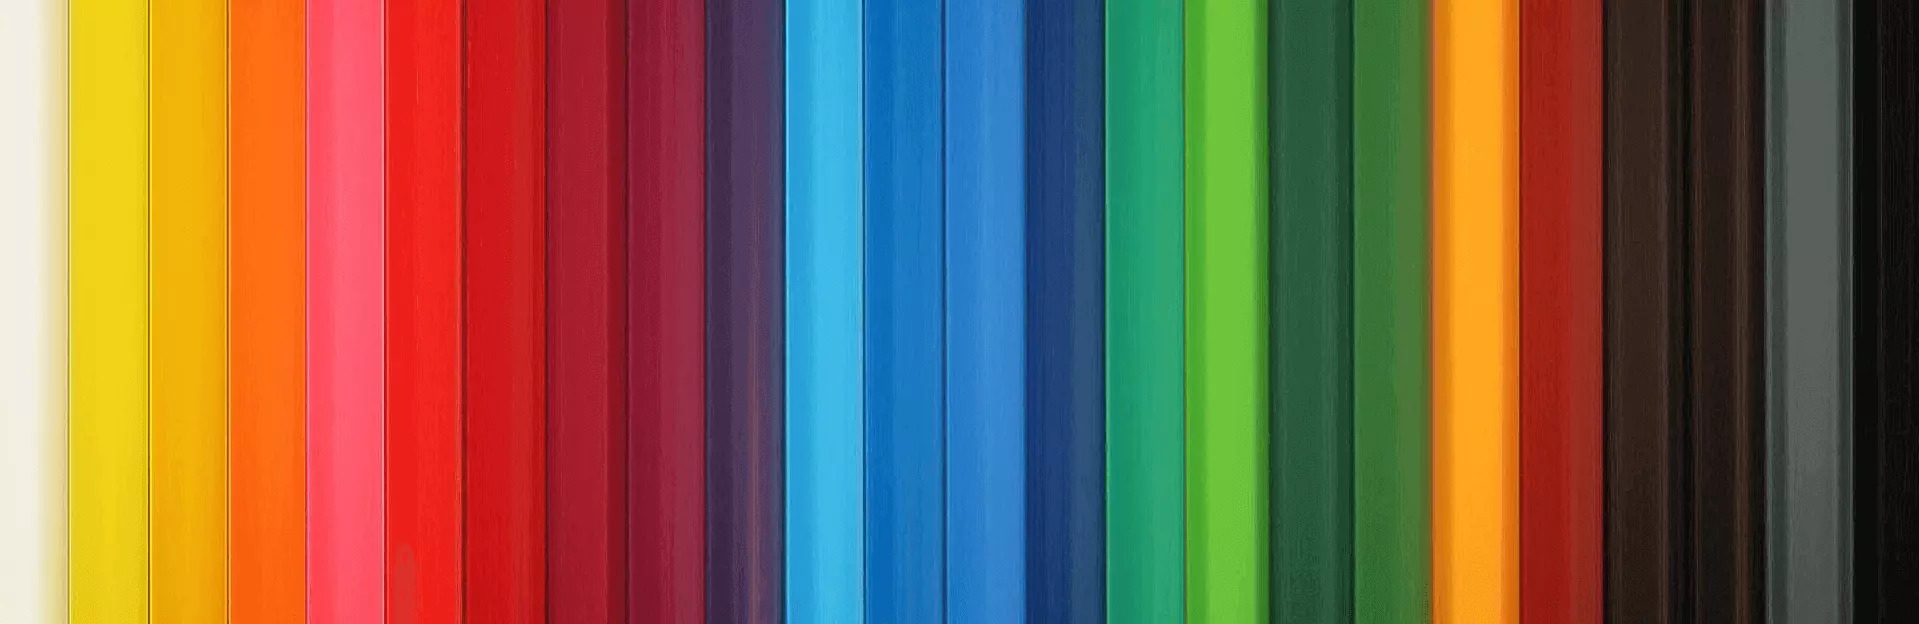 Best color schemes image